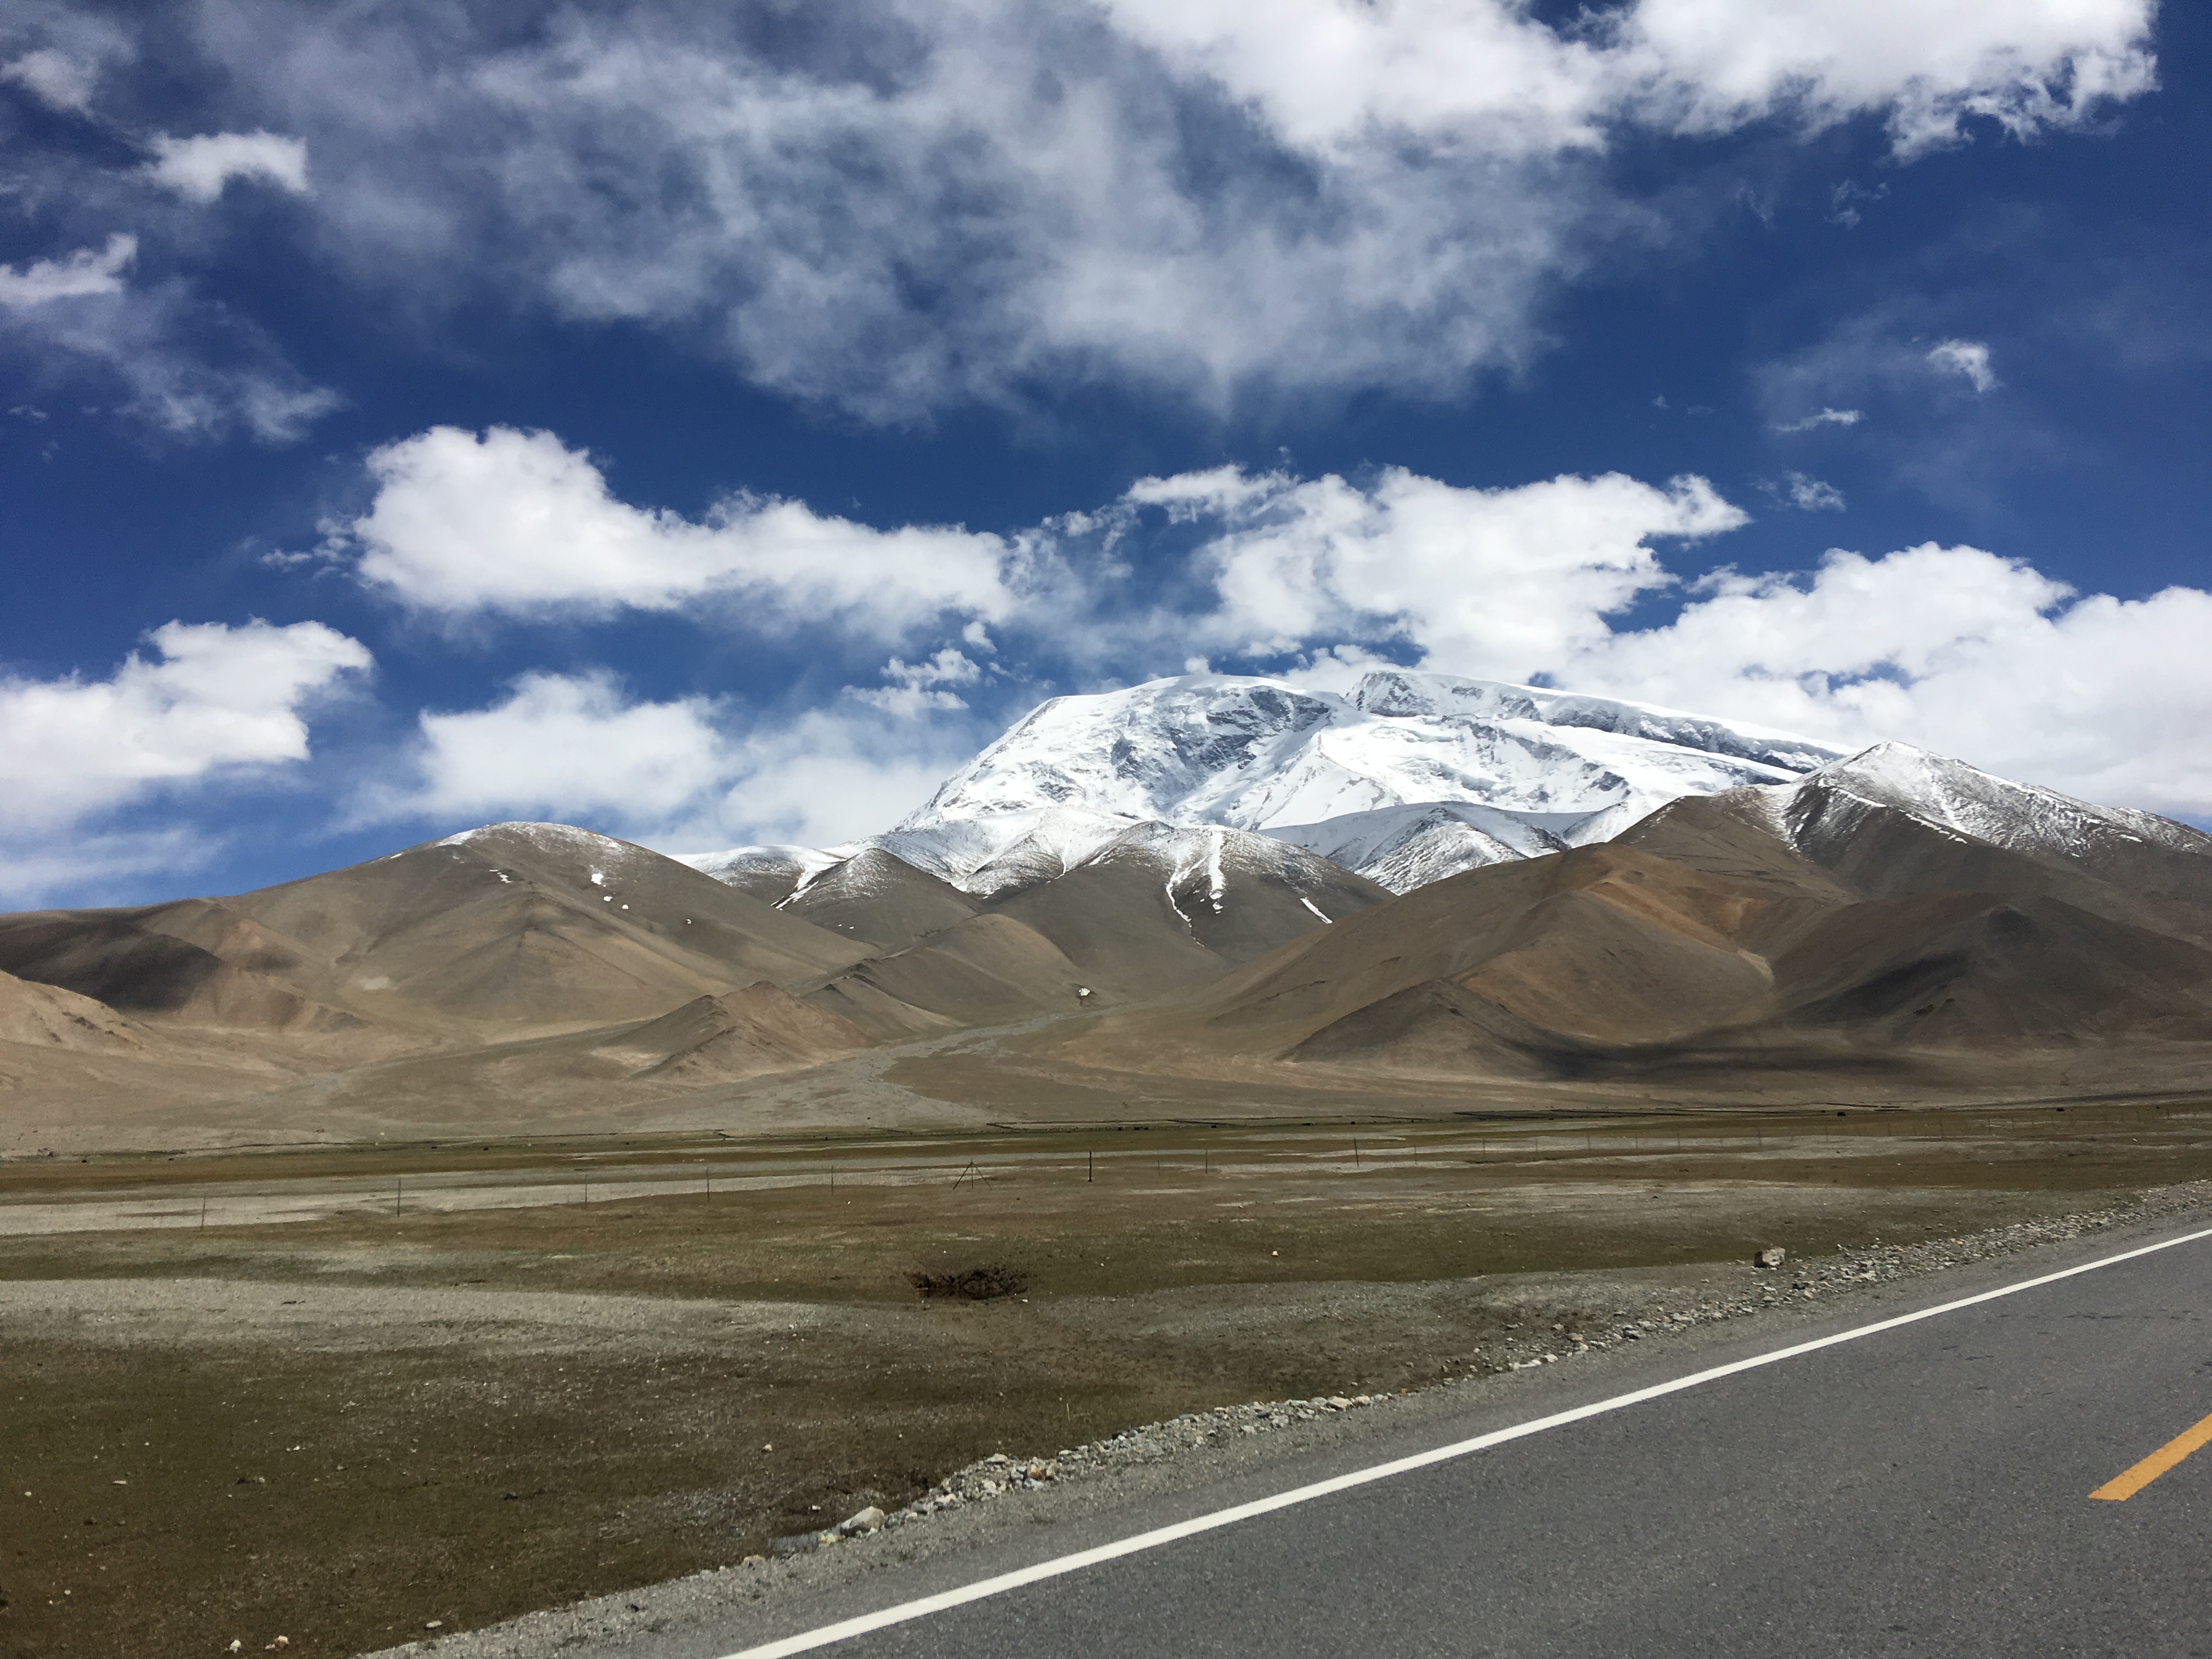 Kashgar and The Karakoram